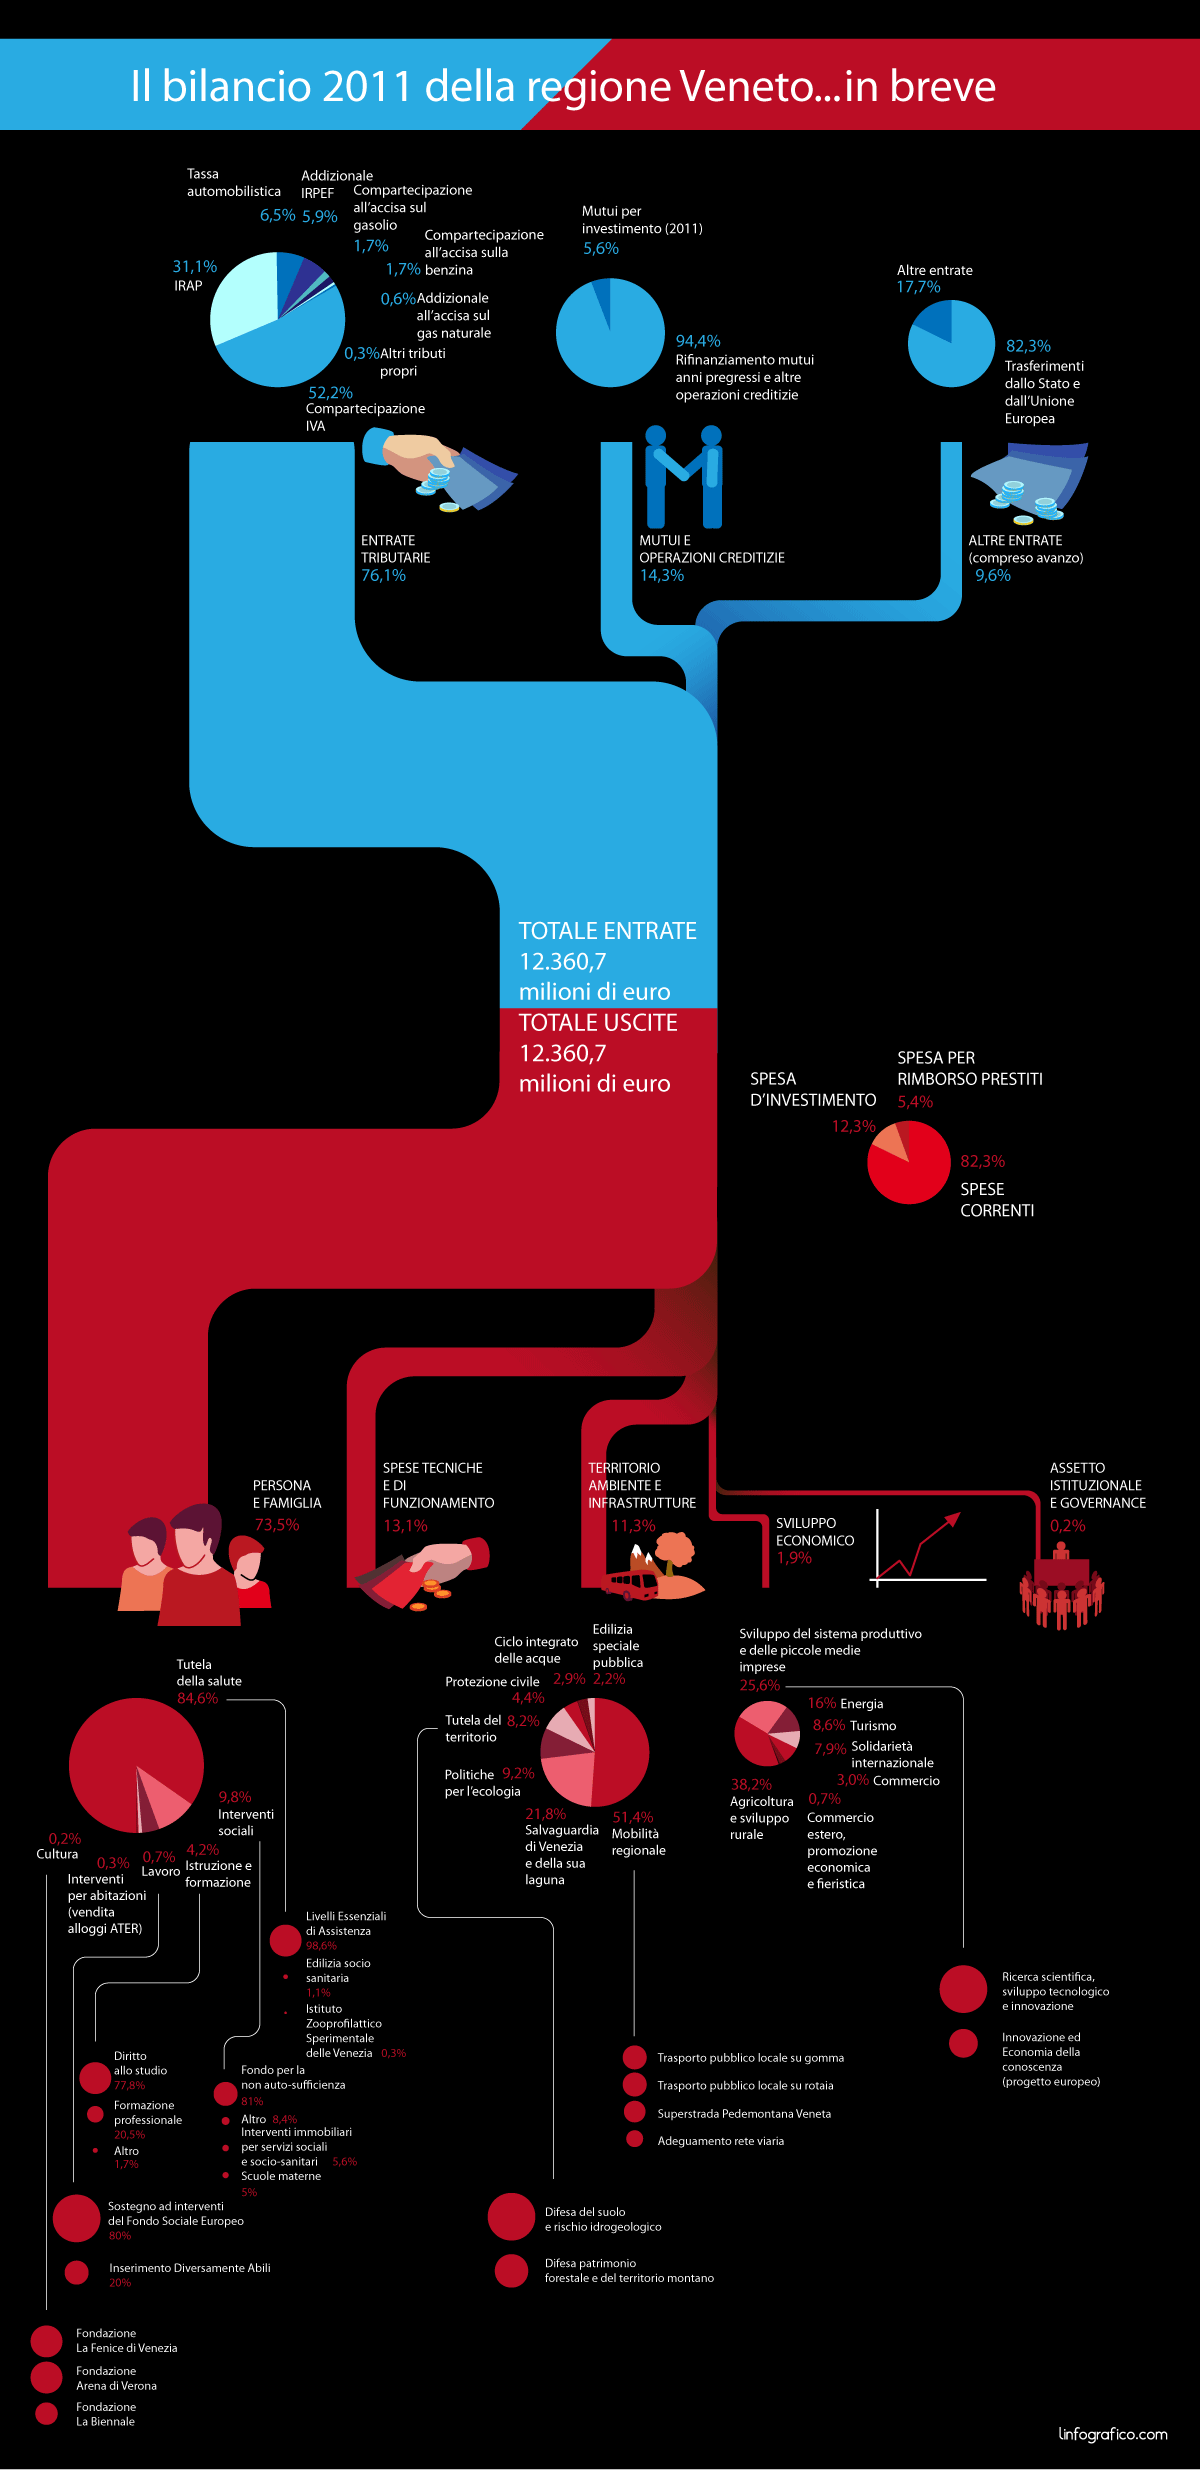 Infografica sul Bilancio 2011 della regione Veneto